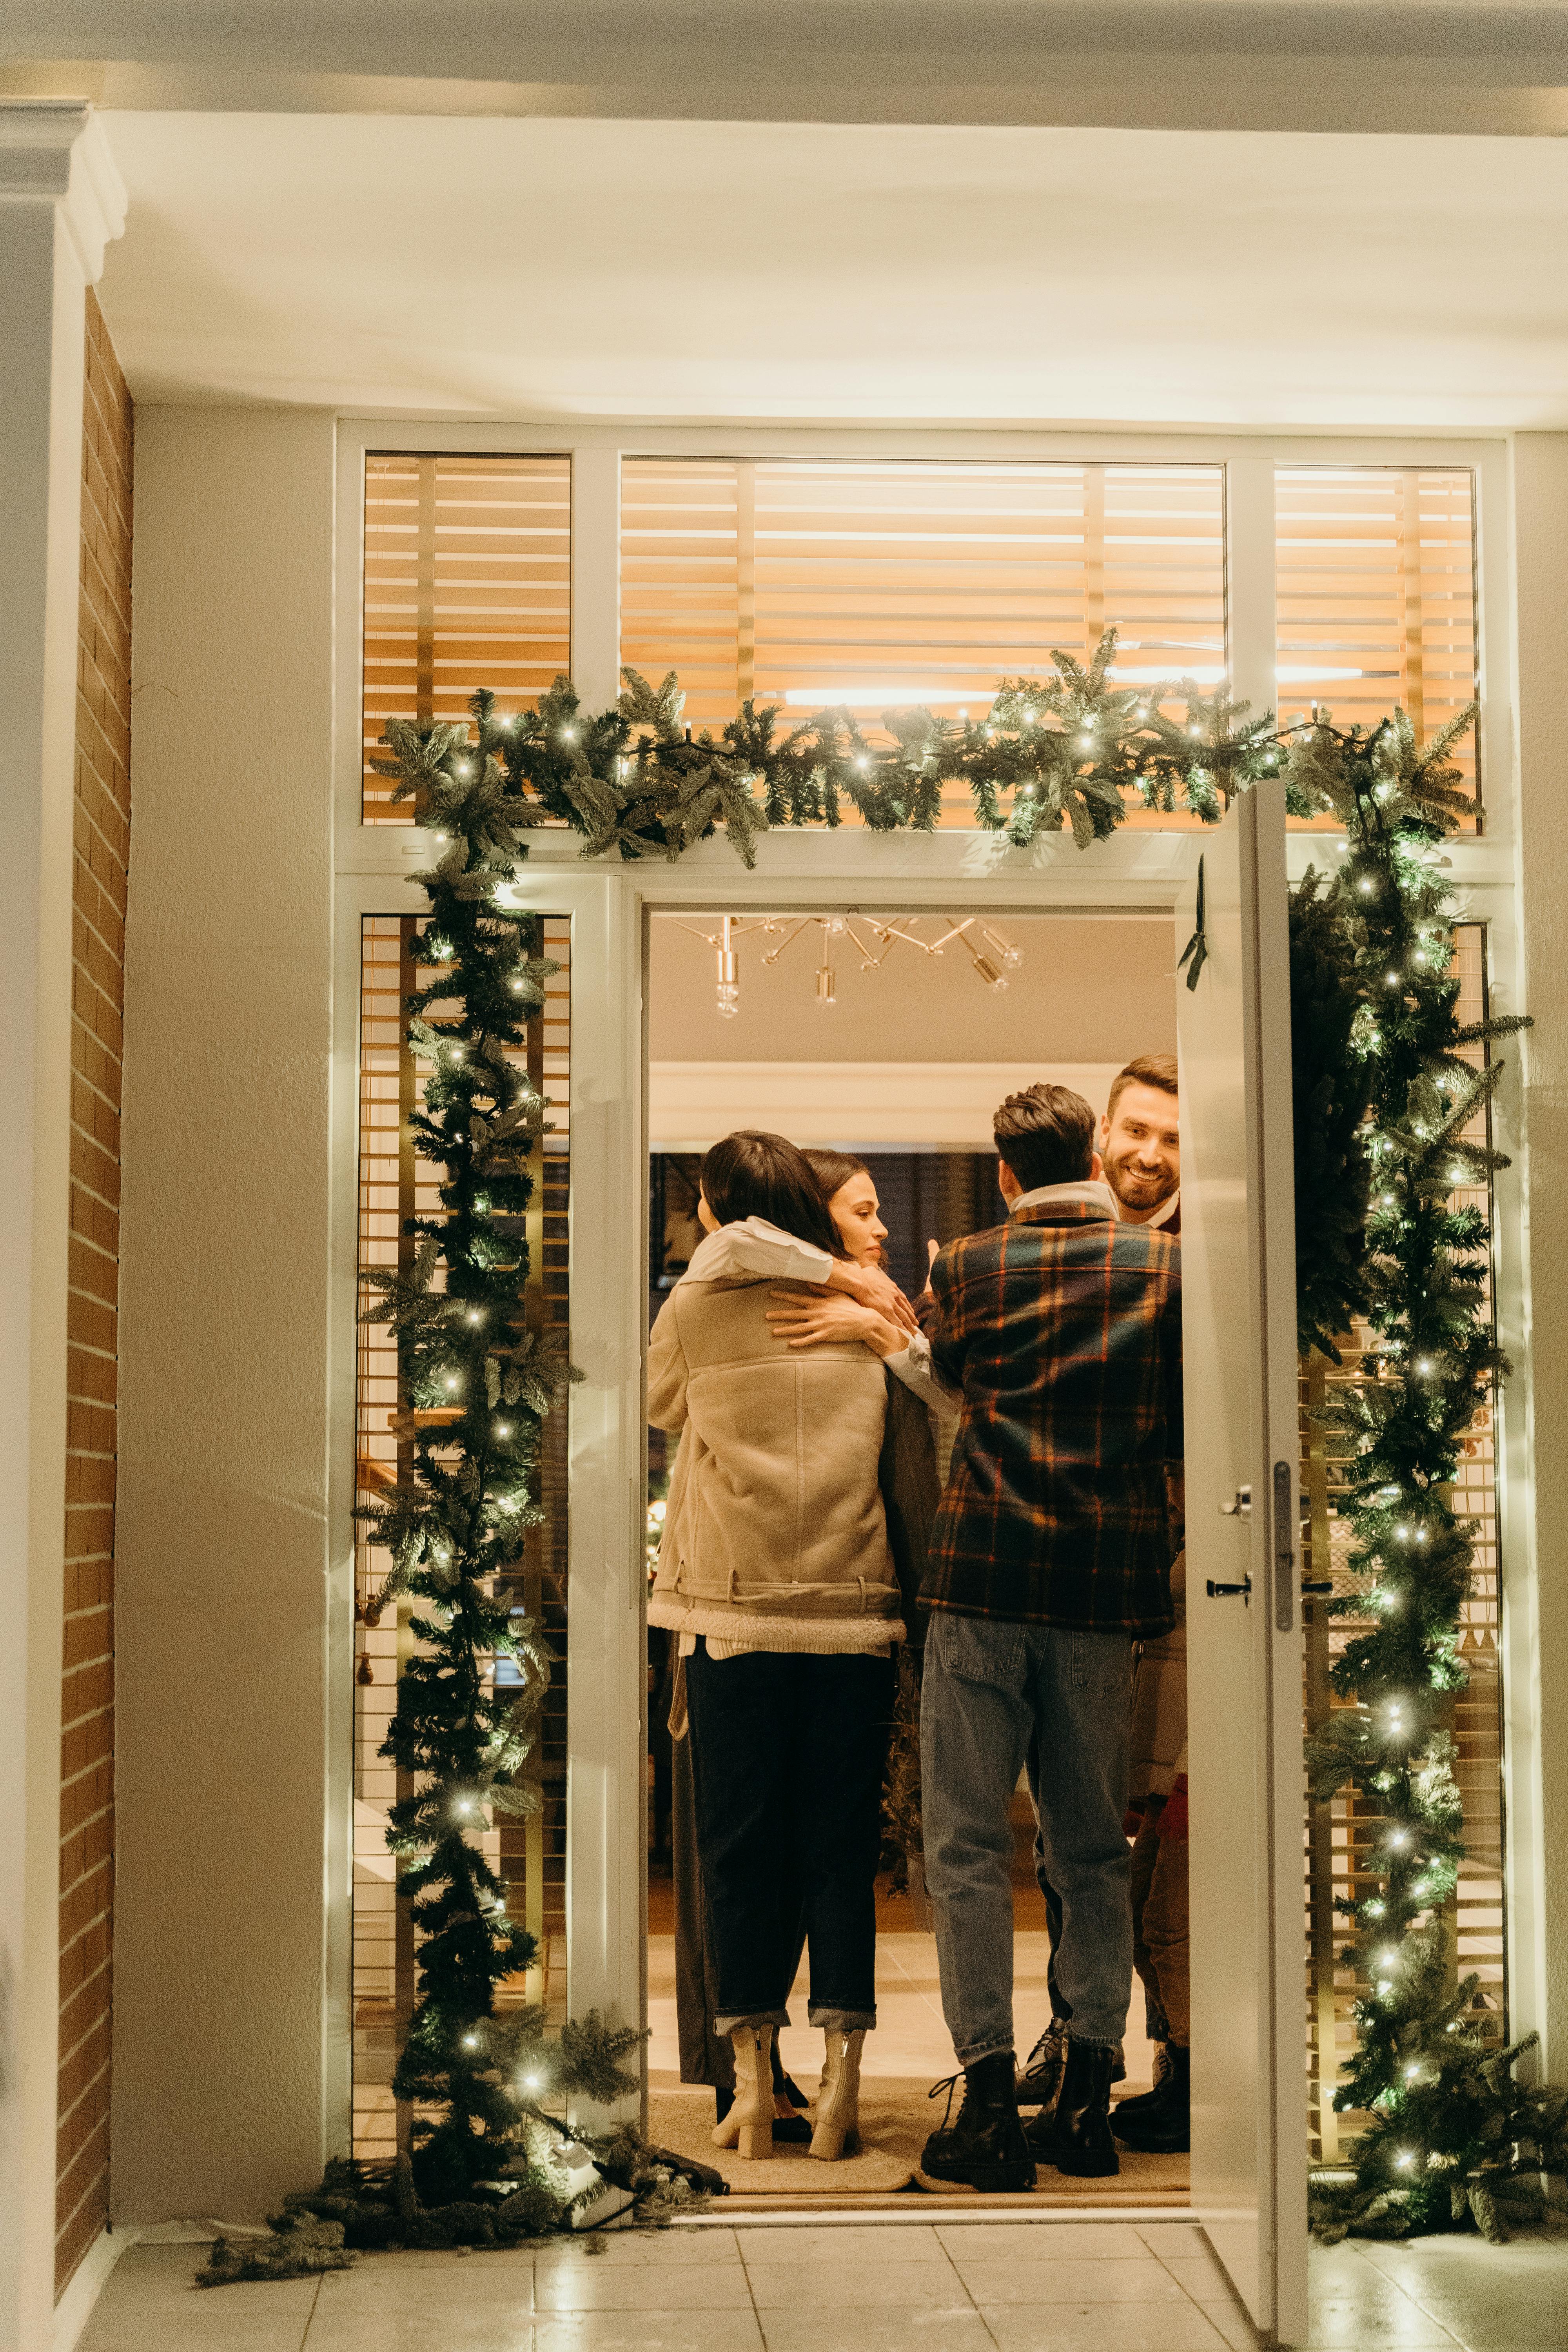 Une réunion de famille pendant Noël | Source : Pexels